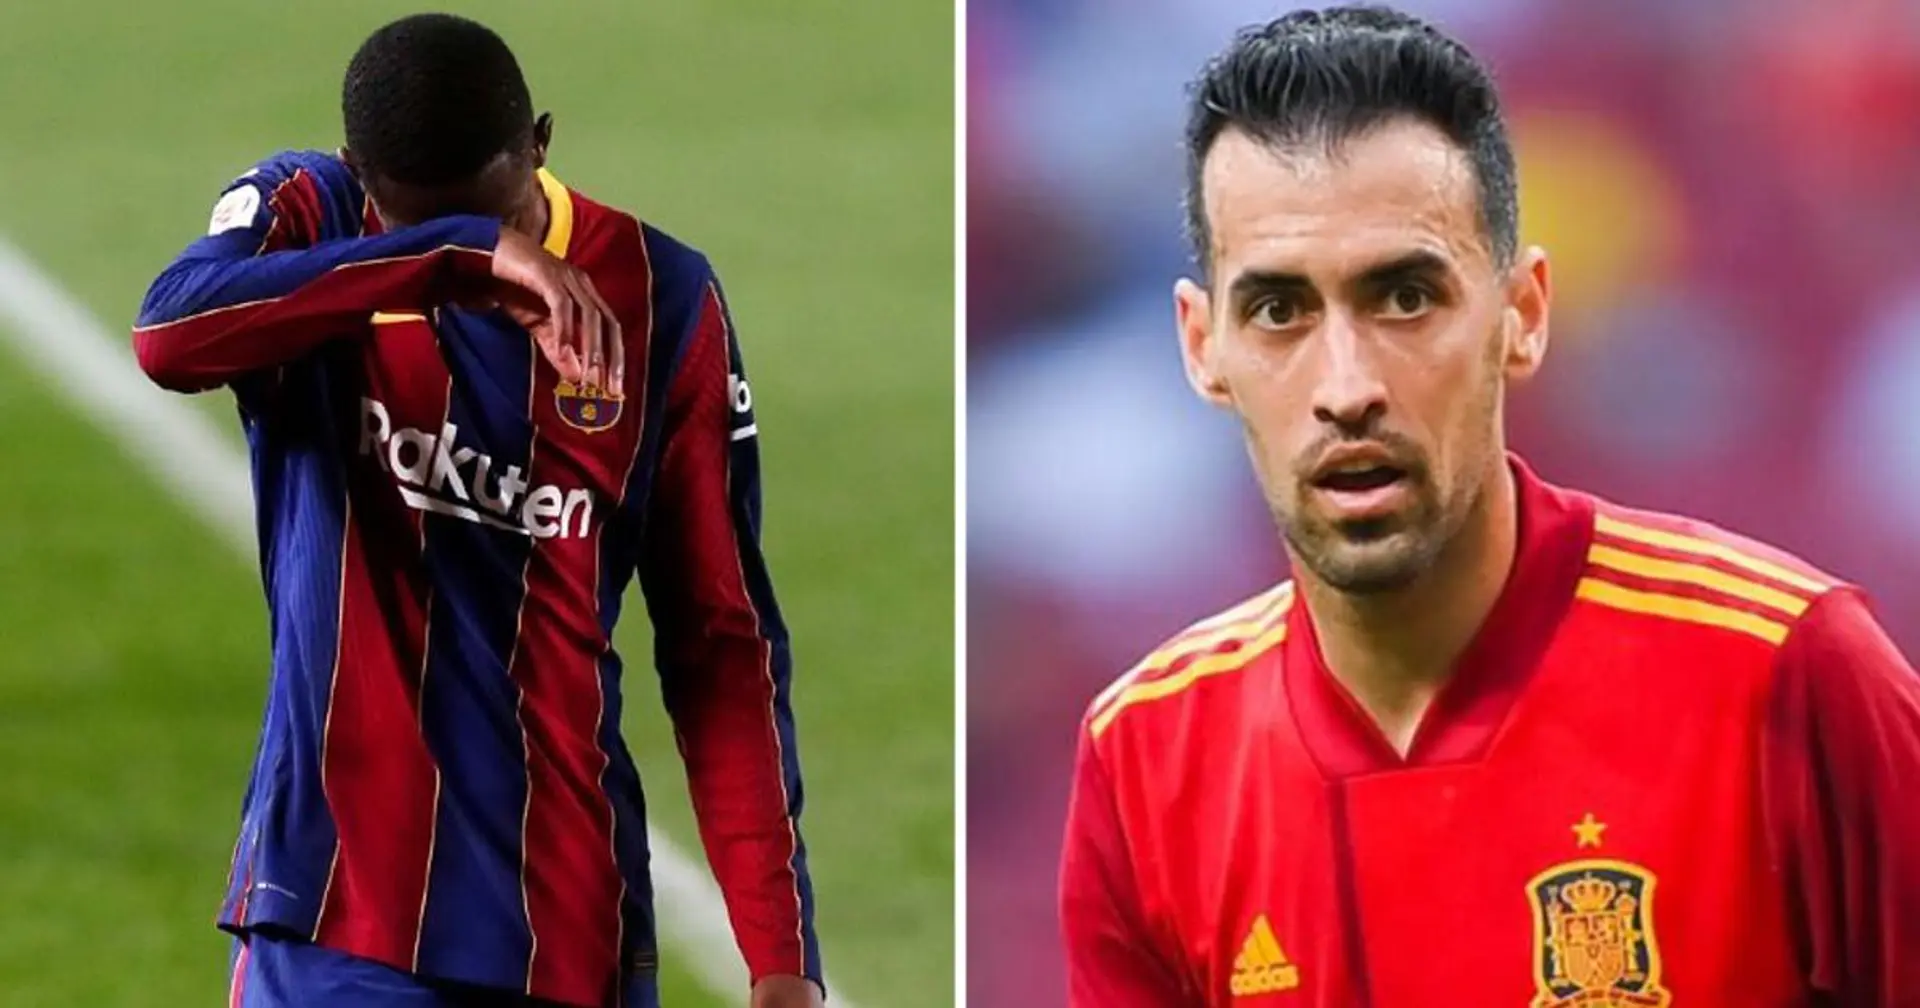 Le Barca s'apprête à signer de nouveaux accords avec 2 Wonderkids et 3 autres dernières actus sous-radar au Barça